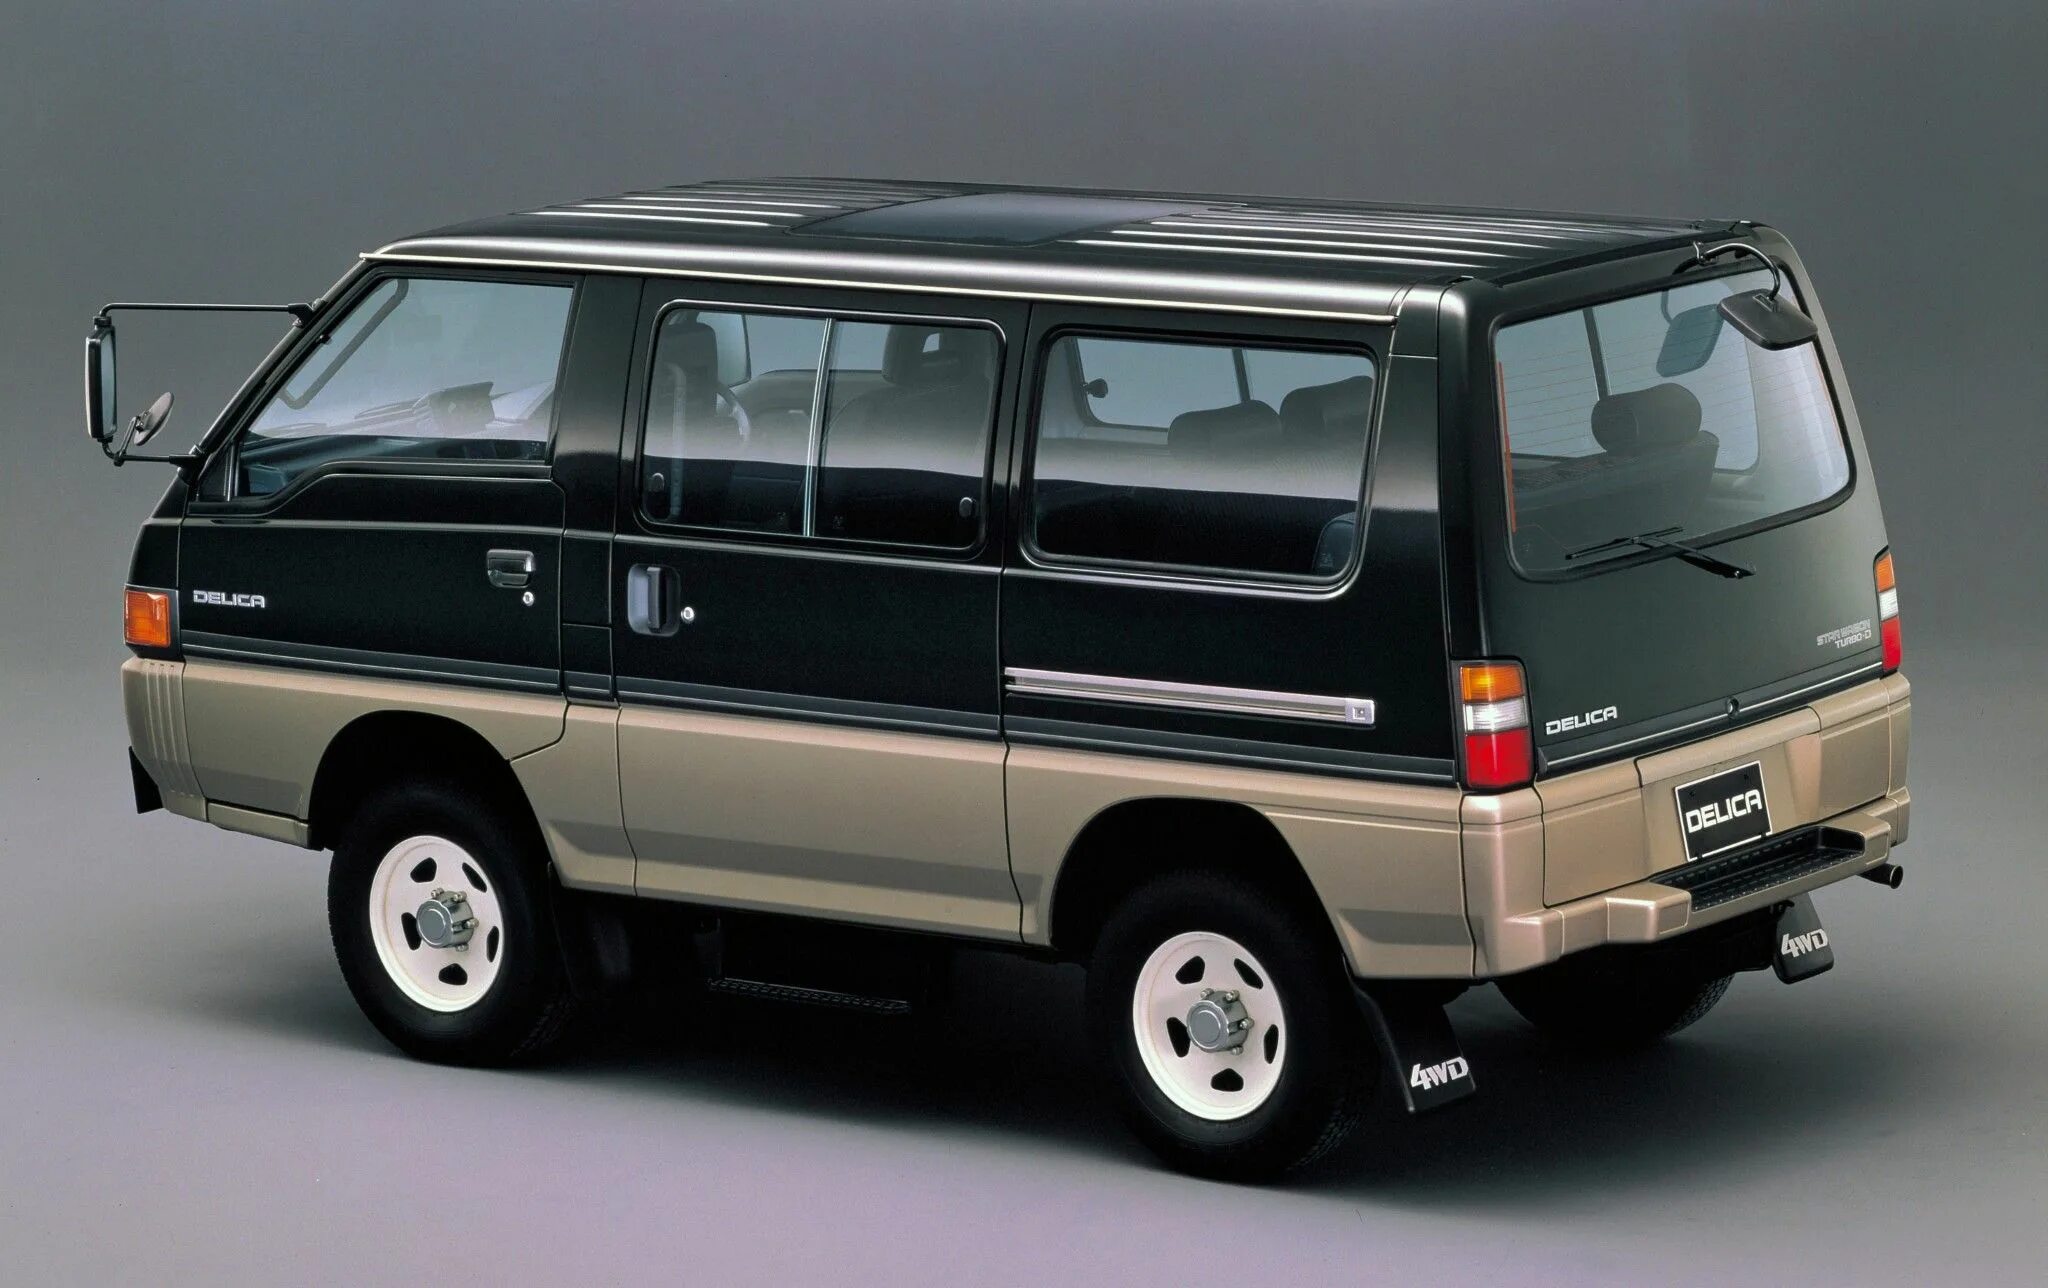 Mitsubishi Delica Star Wagon 4wd. Mitsubishi Delica 4. Mitsubishi Delica 1986. Mitsubishi Delica 4x4.